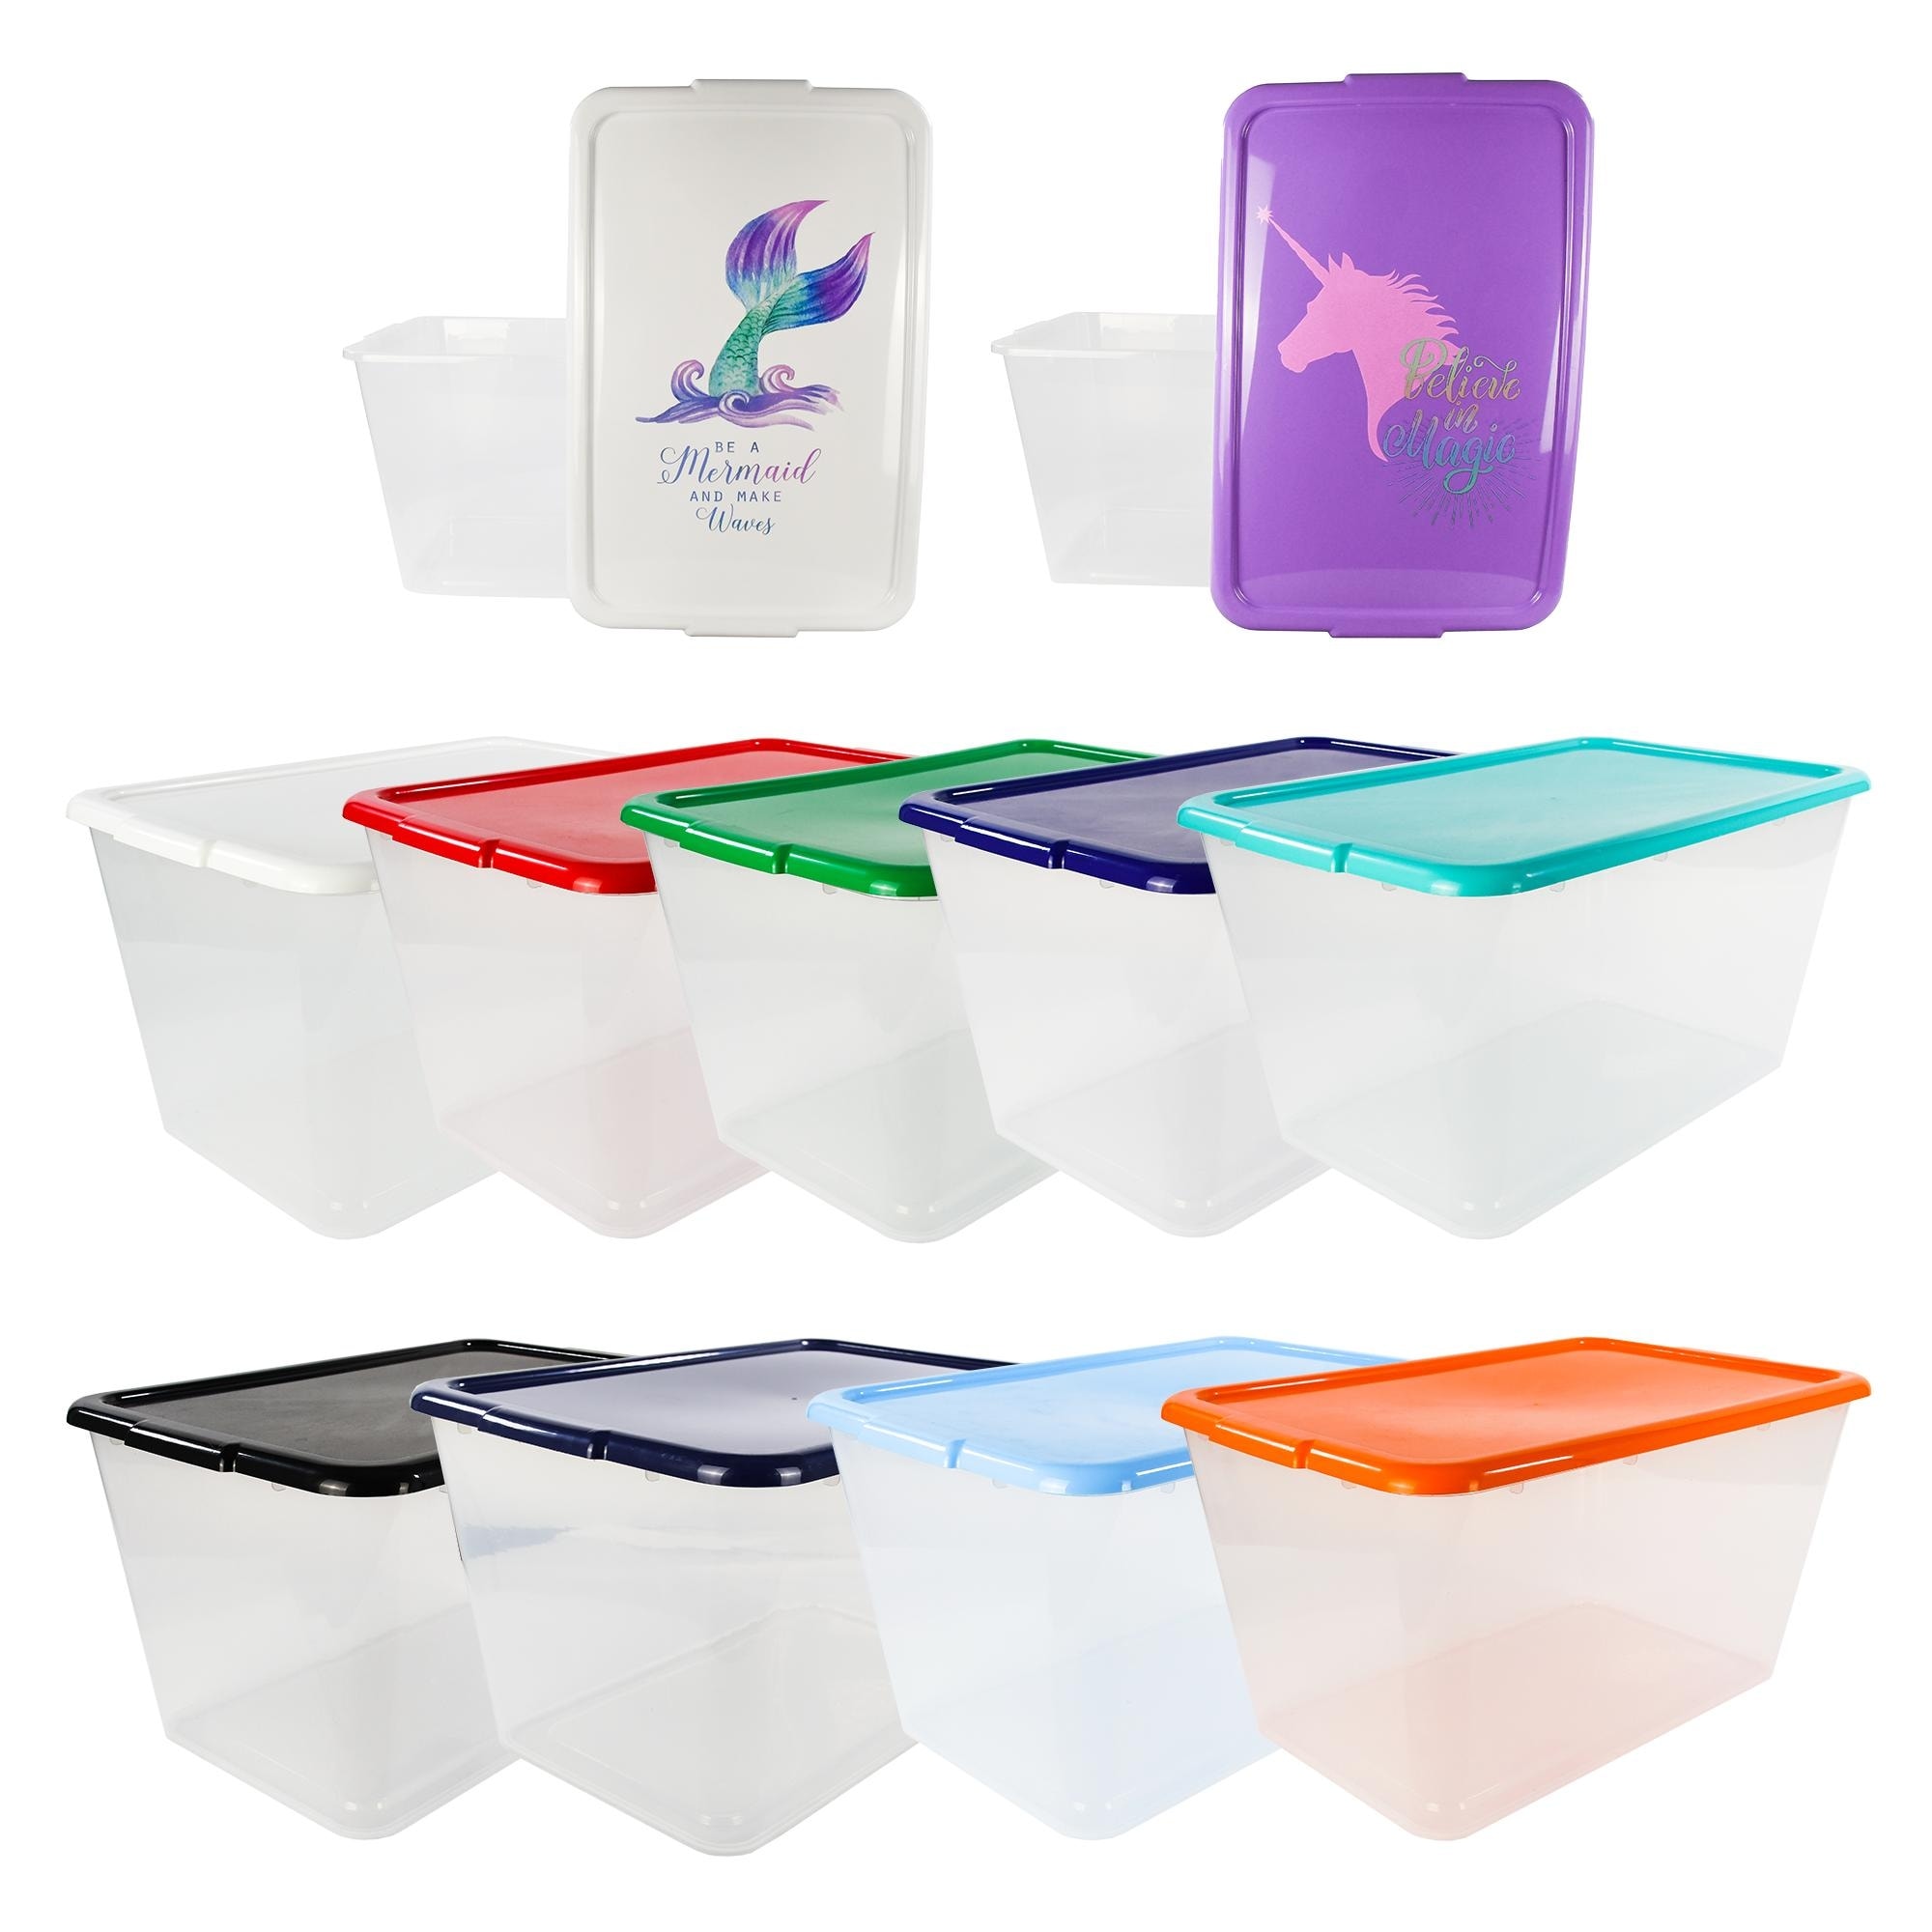 SimplyKleen Set of 2 Plastic Shower Caddy Storage Organizer